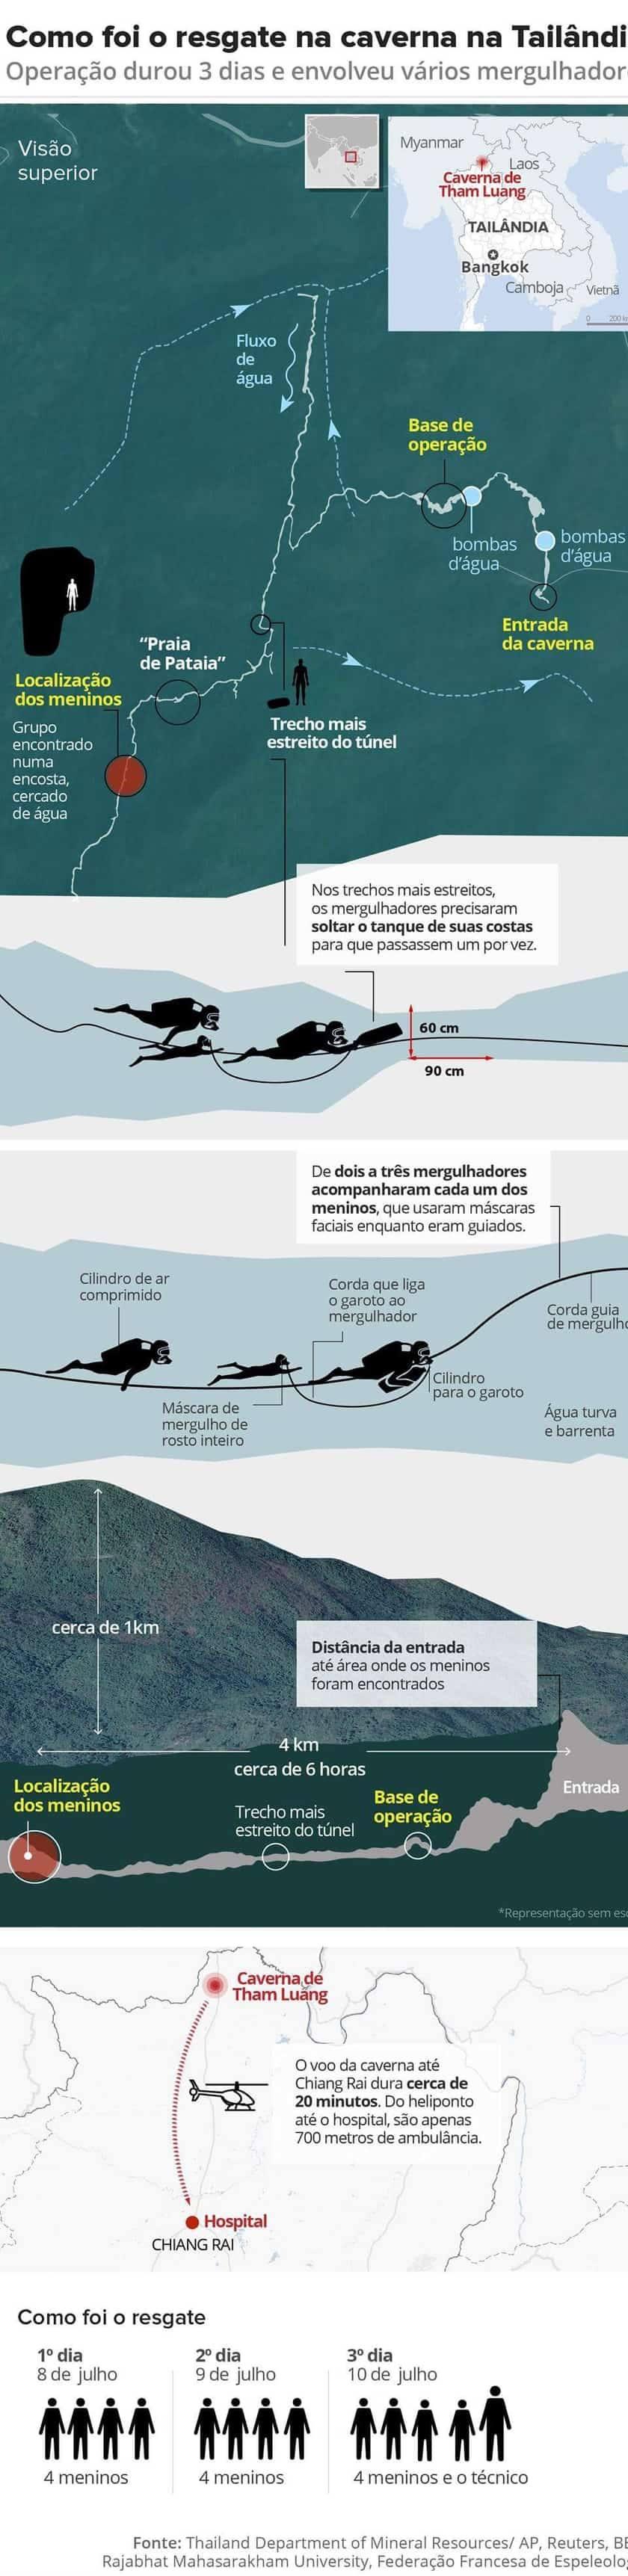 Mergulhador envolvido em resgate em caverna na Tailândia divulga fotos